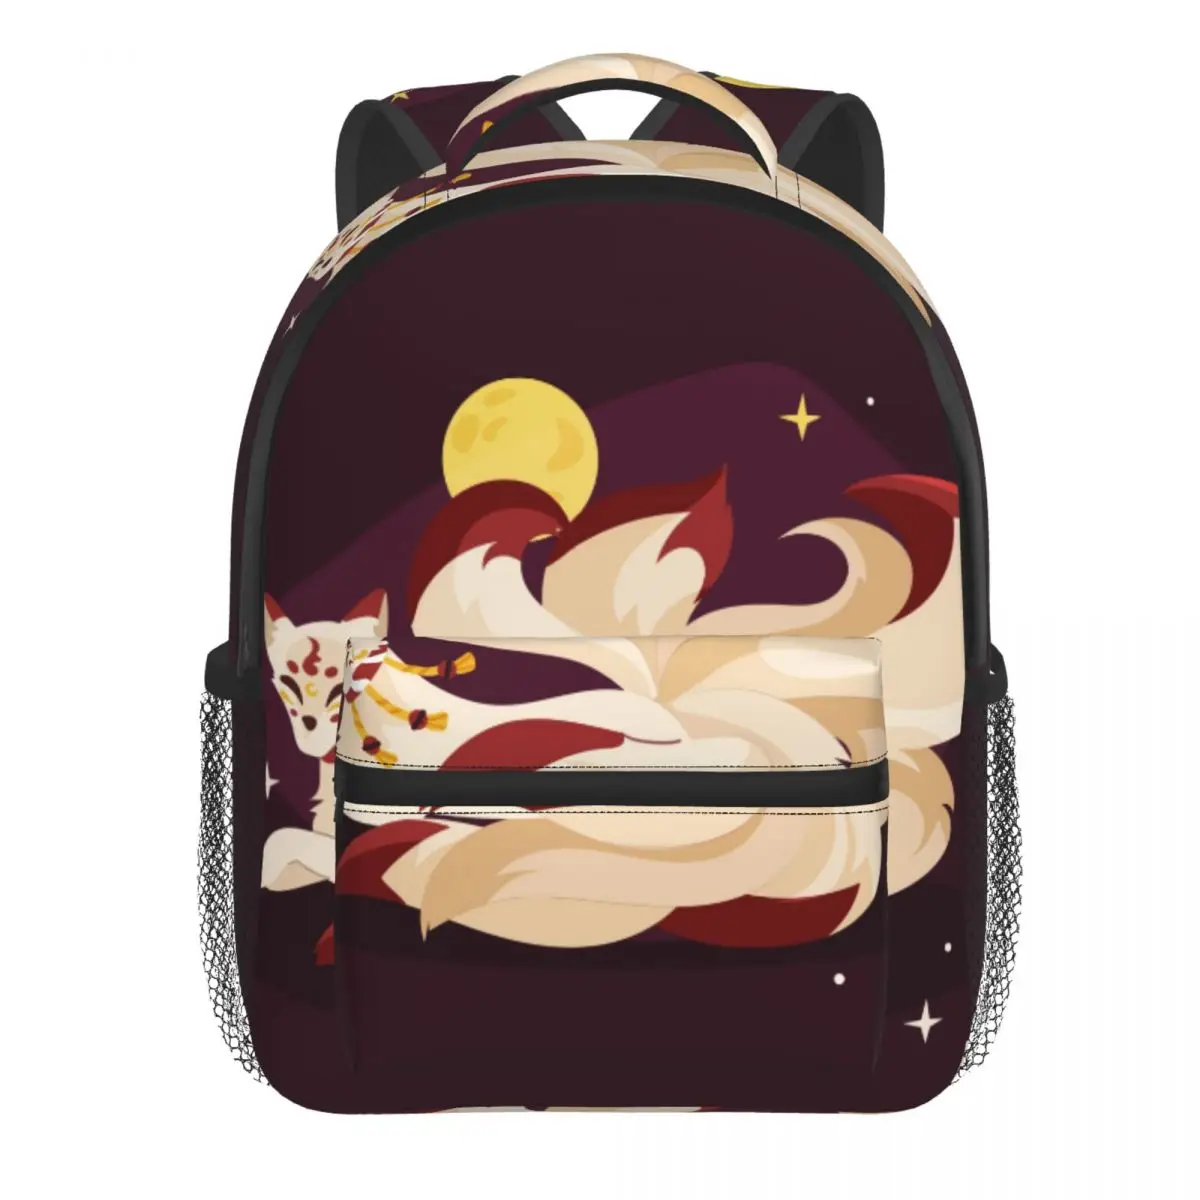 Kids Backpack Kitsune Illustration Kindergarten Children Mochila School Bag